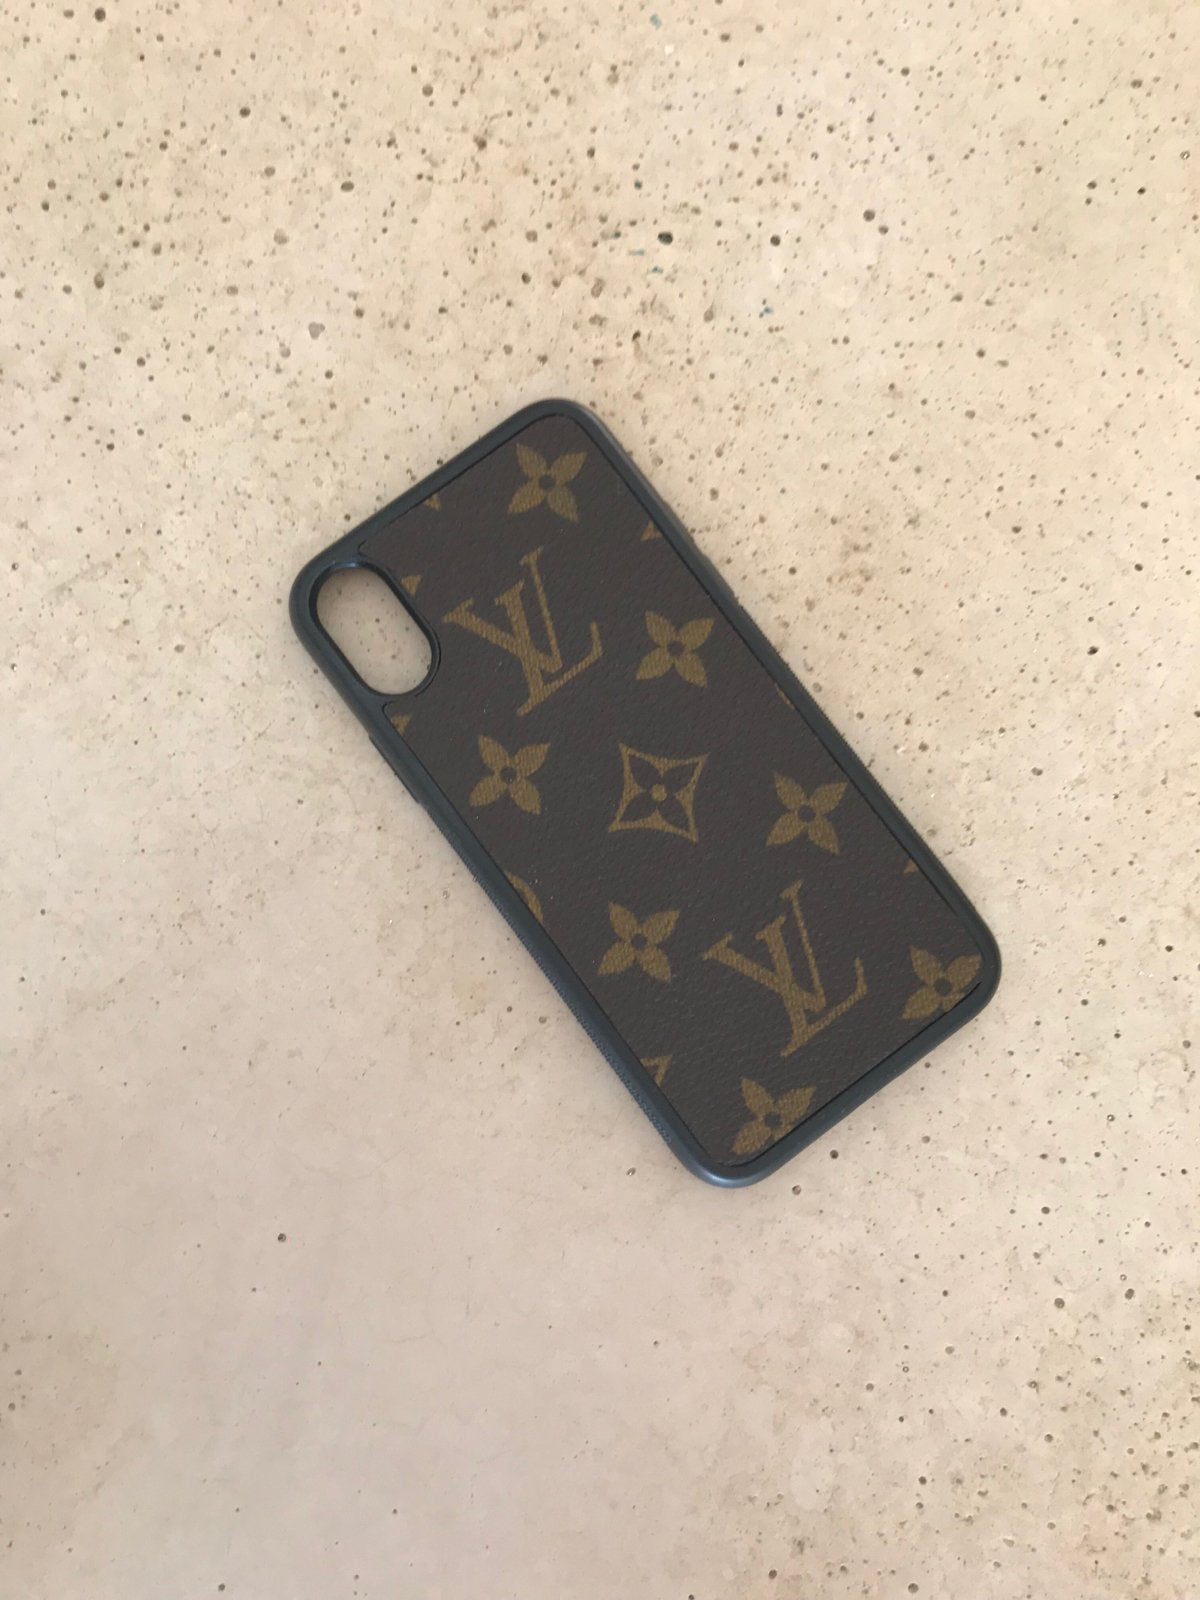 designer lv phone case